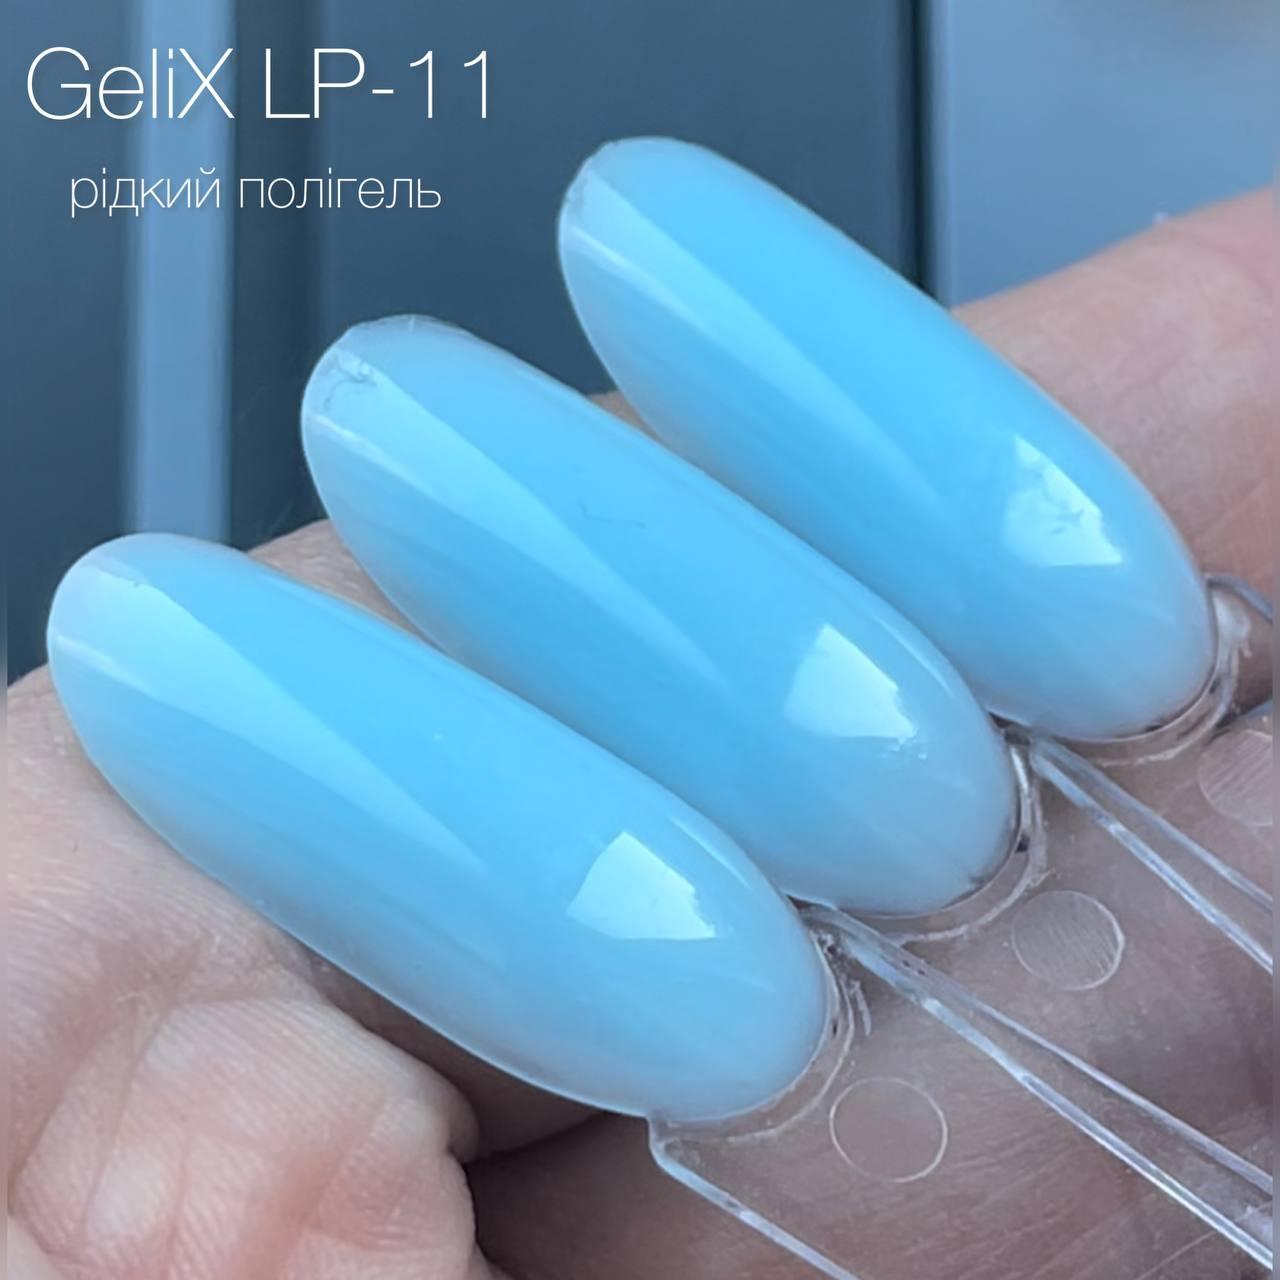 Рідкий полигель - Gelix LIQUID POLYGEL - LP-11, небесно-блакитний